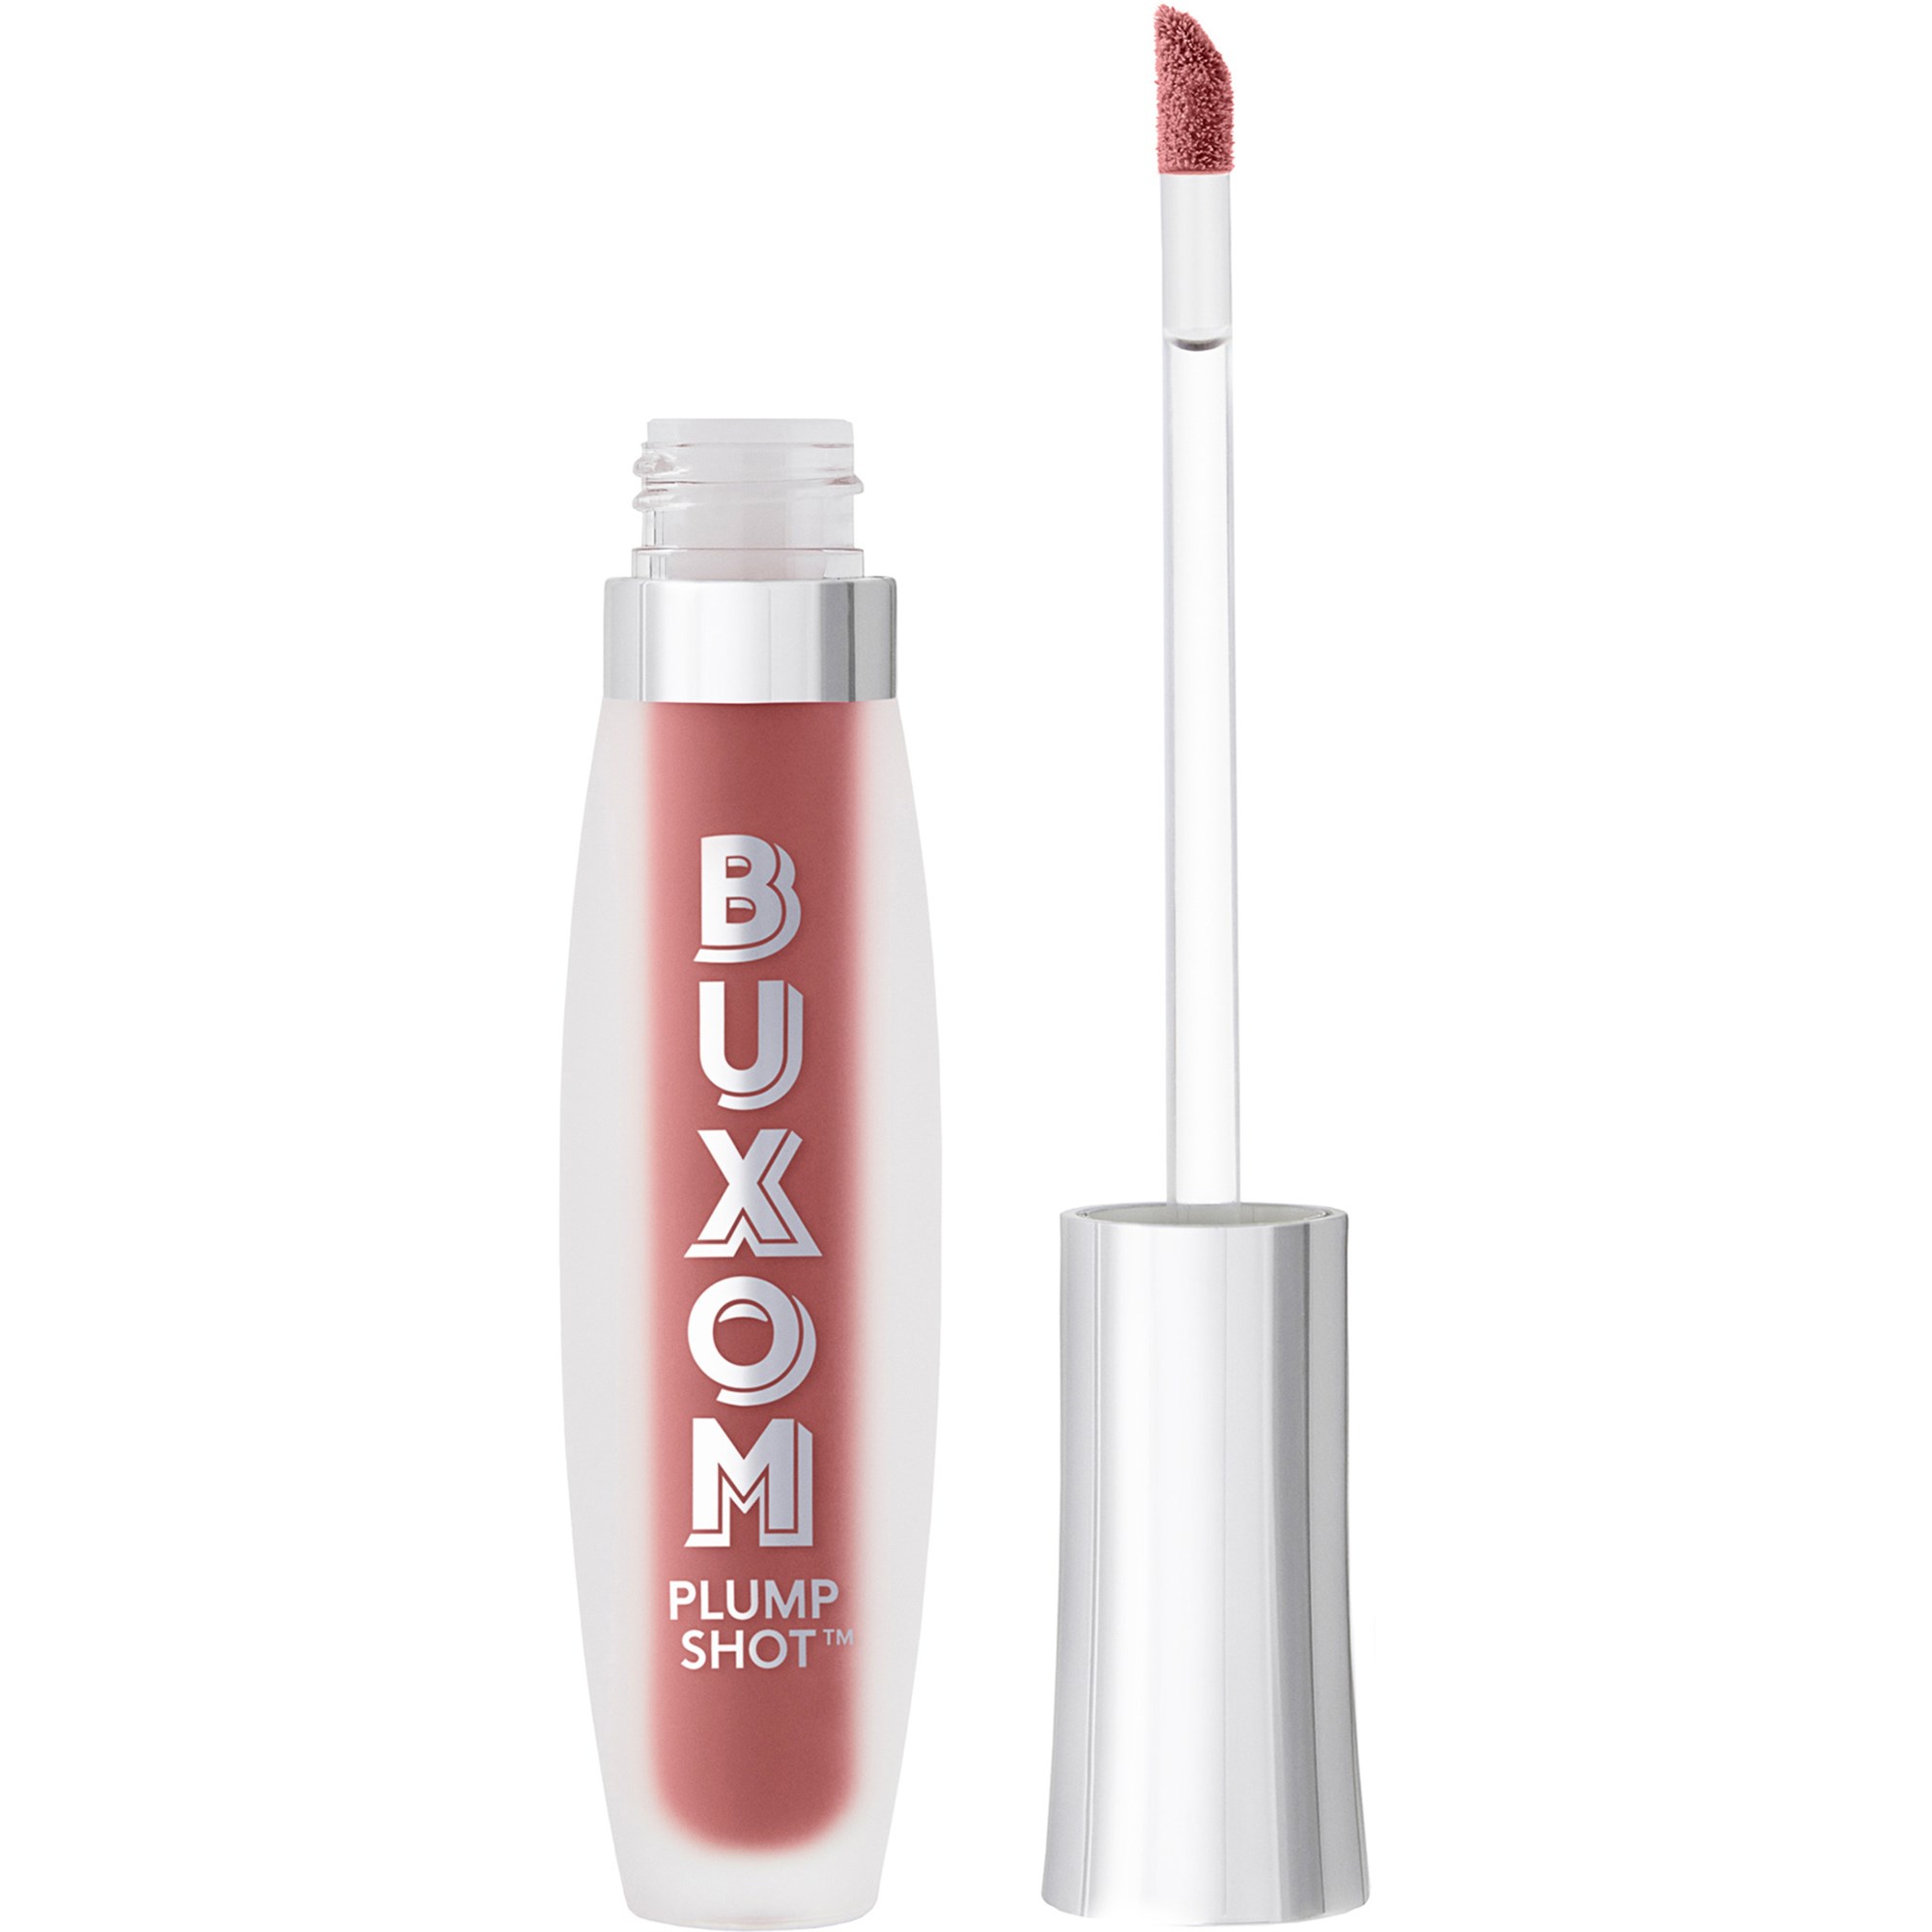 Bilde av Buxom Plump Shot™ Collagen-infused Lip Serum Dolly Babe